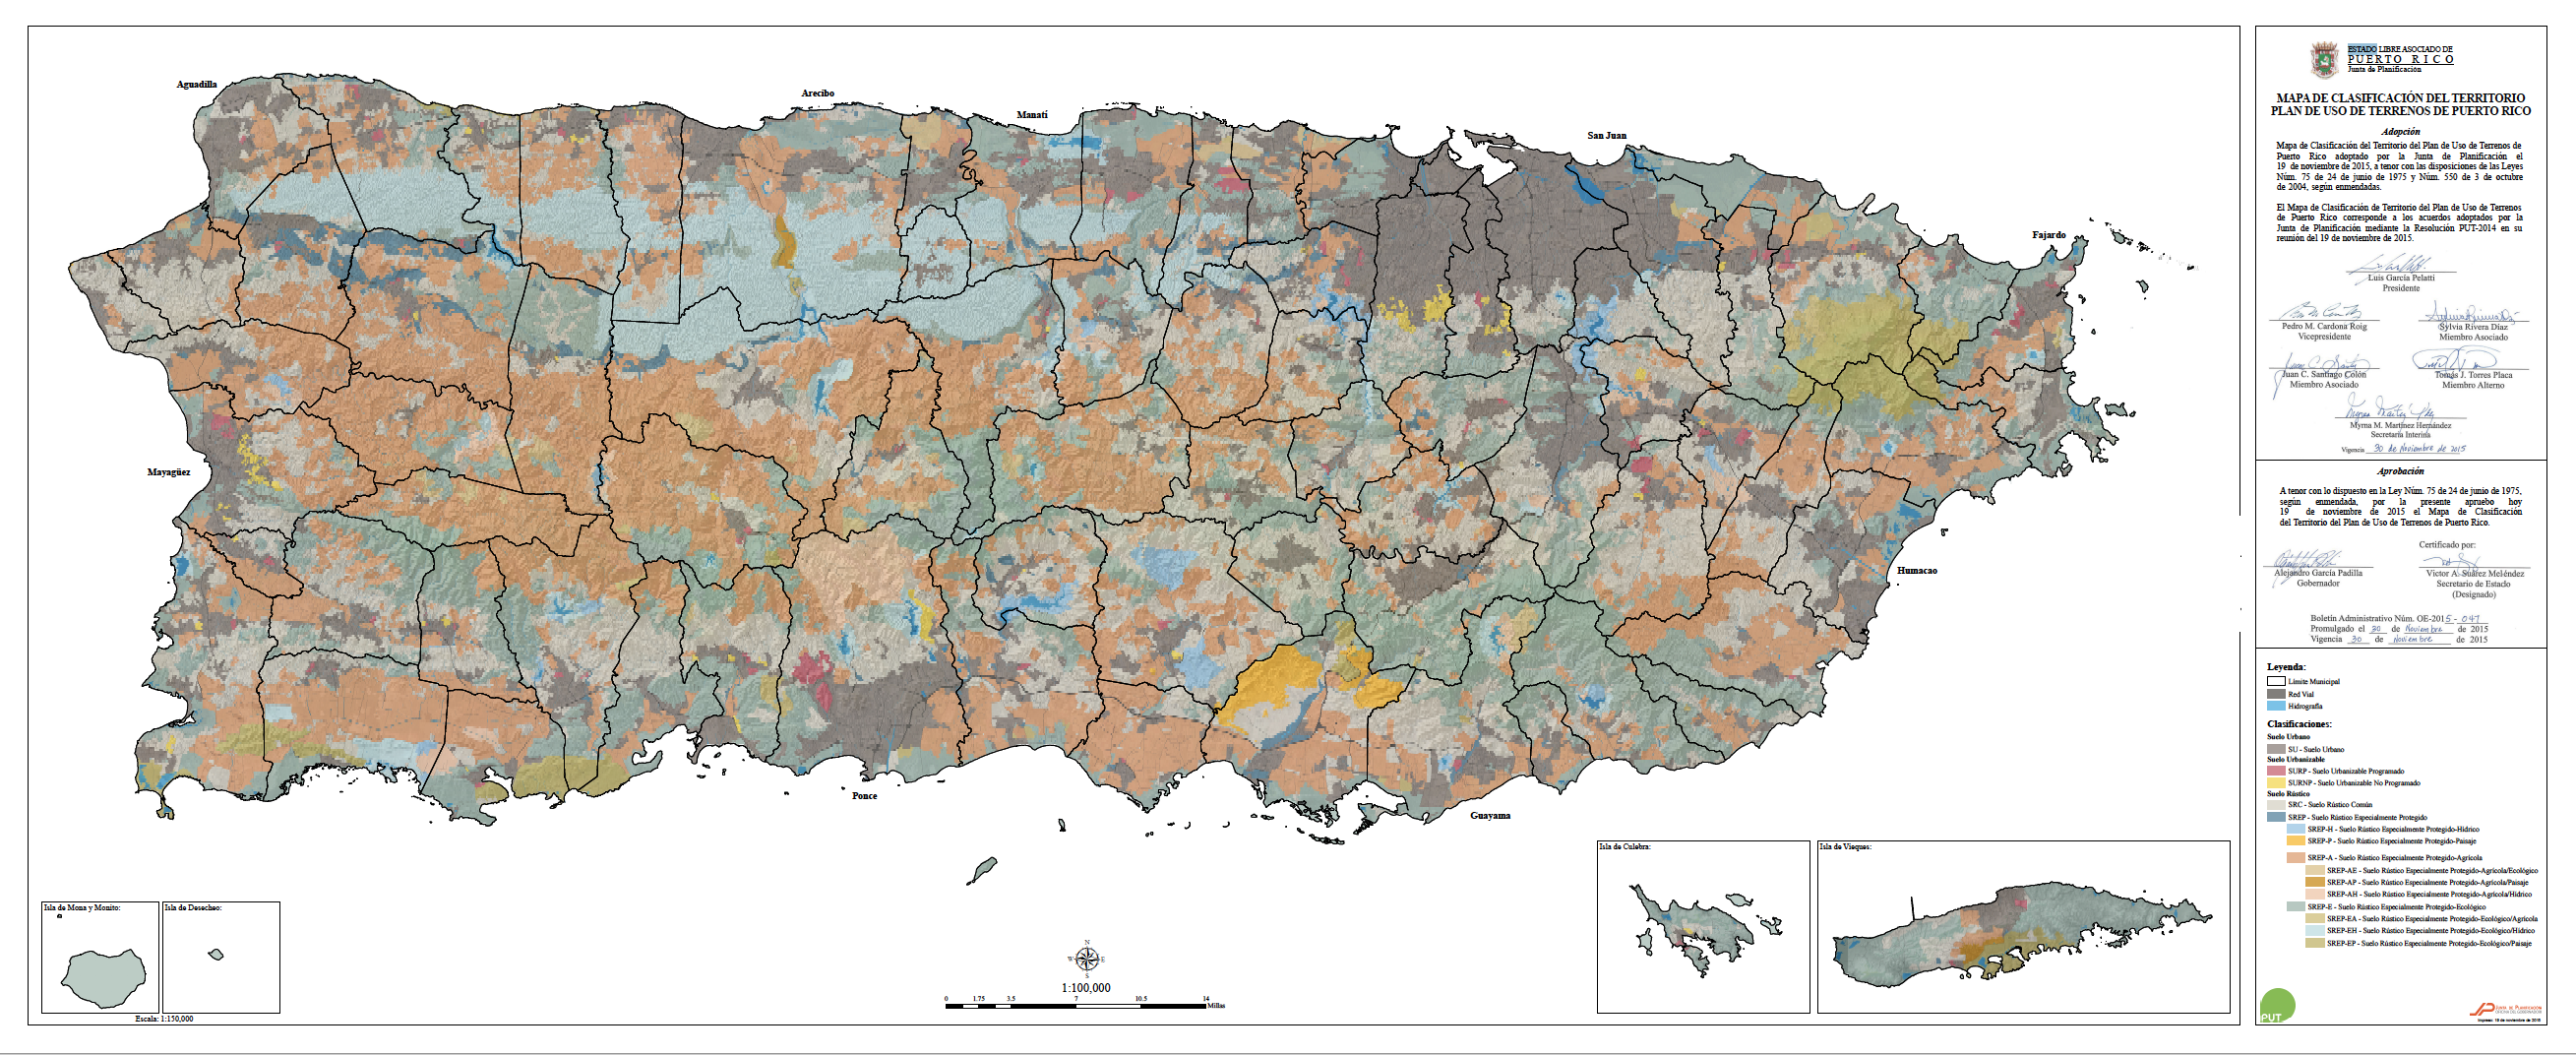 Plan de Uso de Terrenos de Puerto Rico